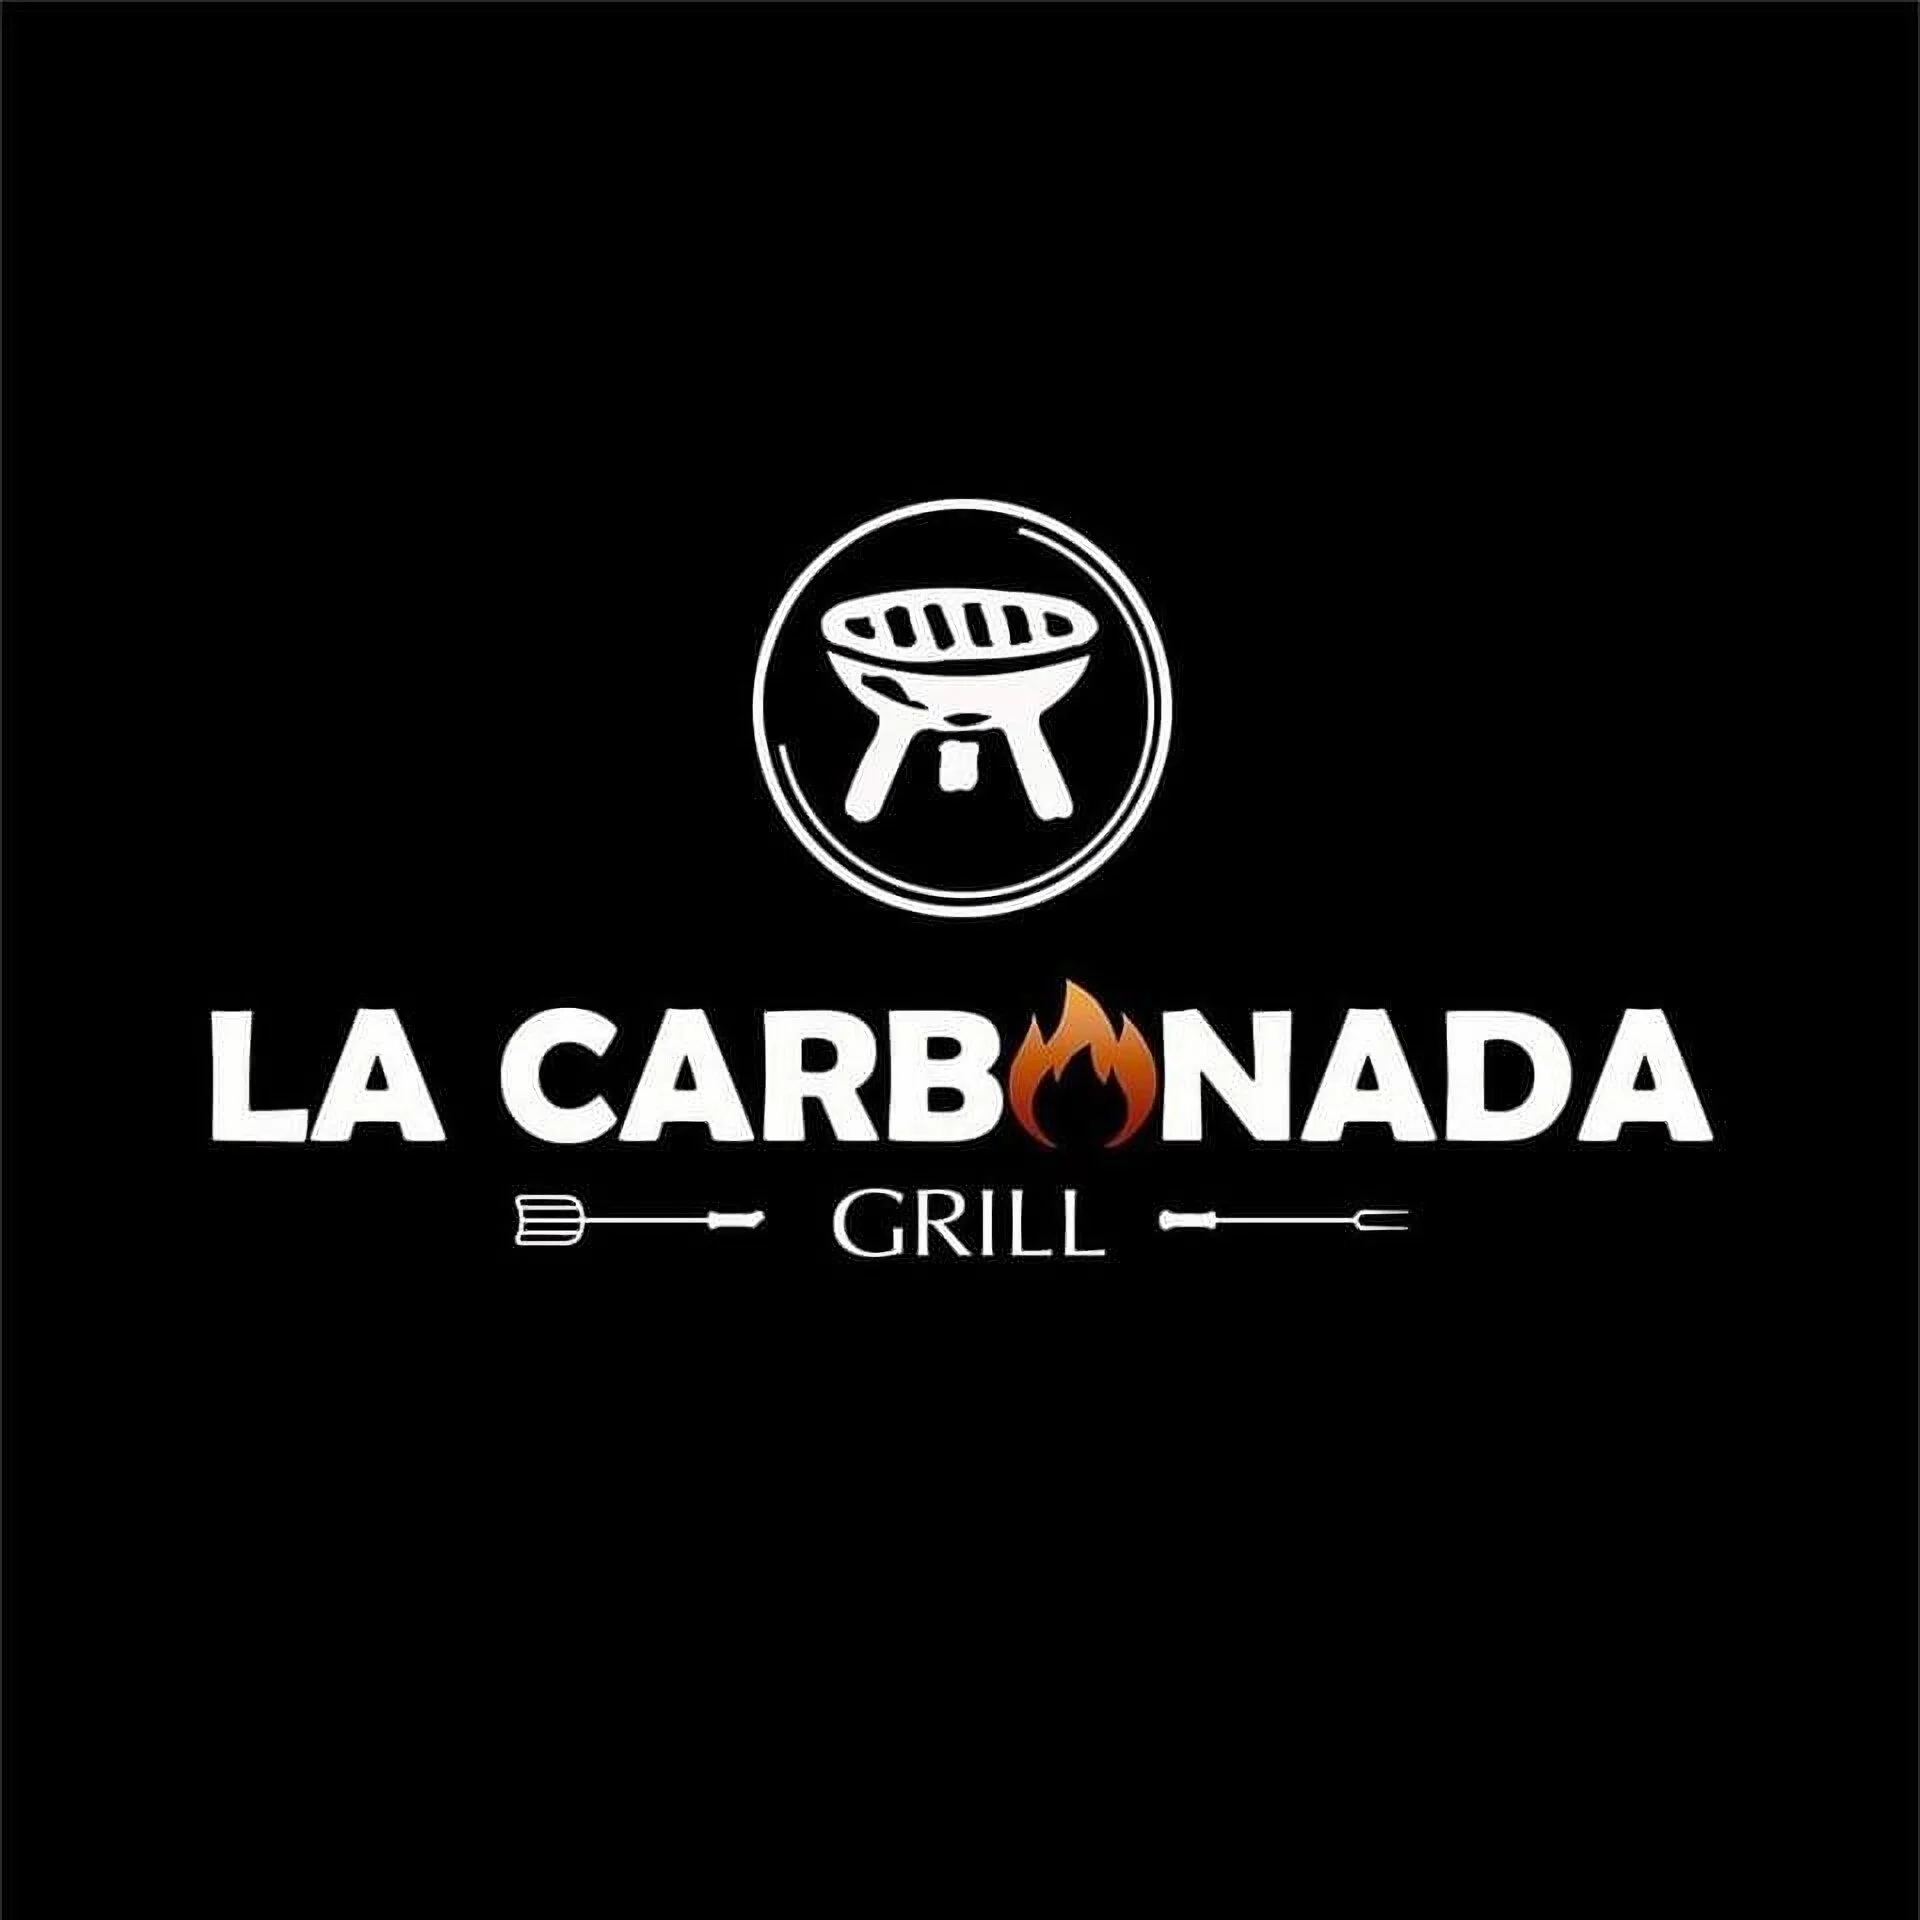 Restaurantes-la-carbonada-grill-17143